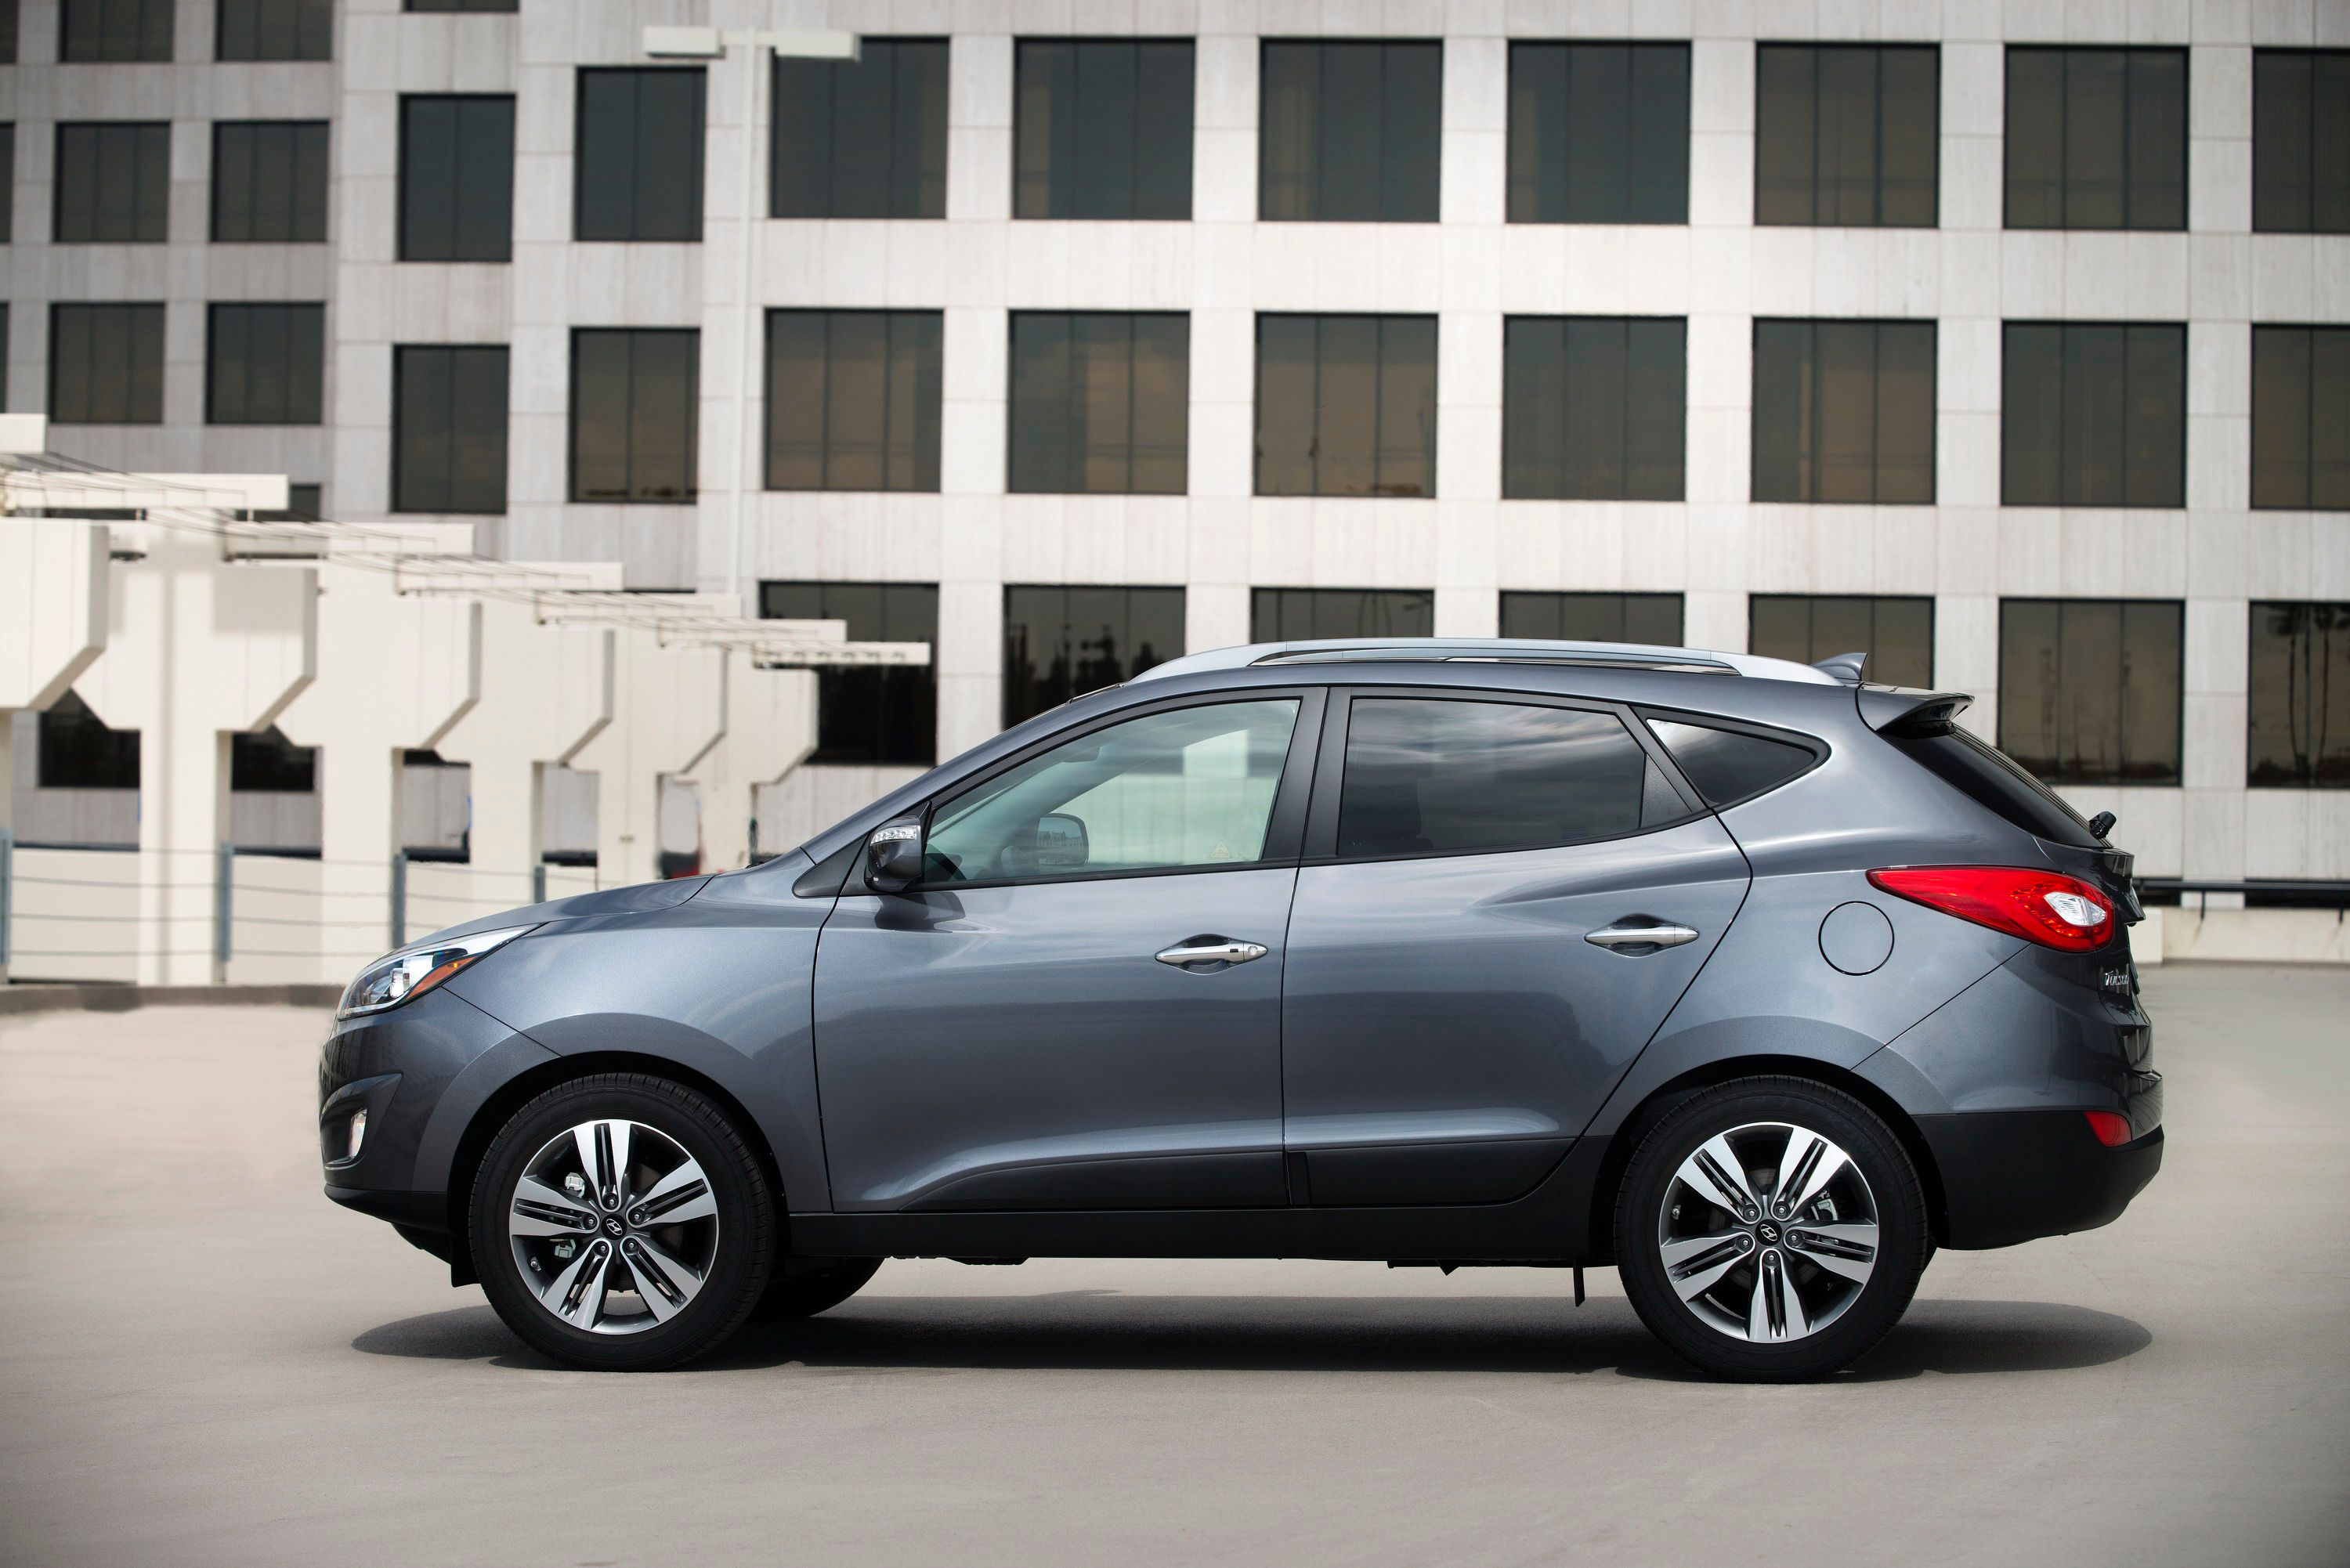 2014 - 2015 Hyundai Tucson